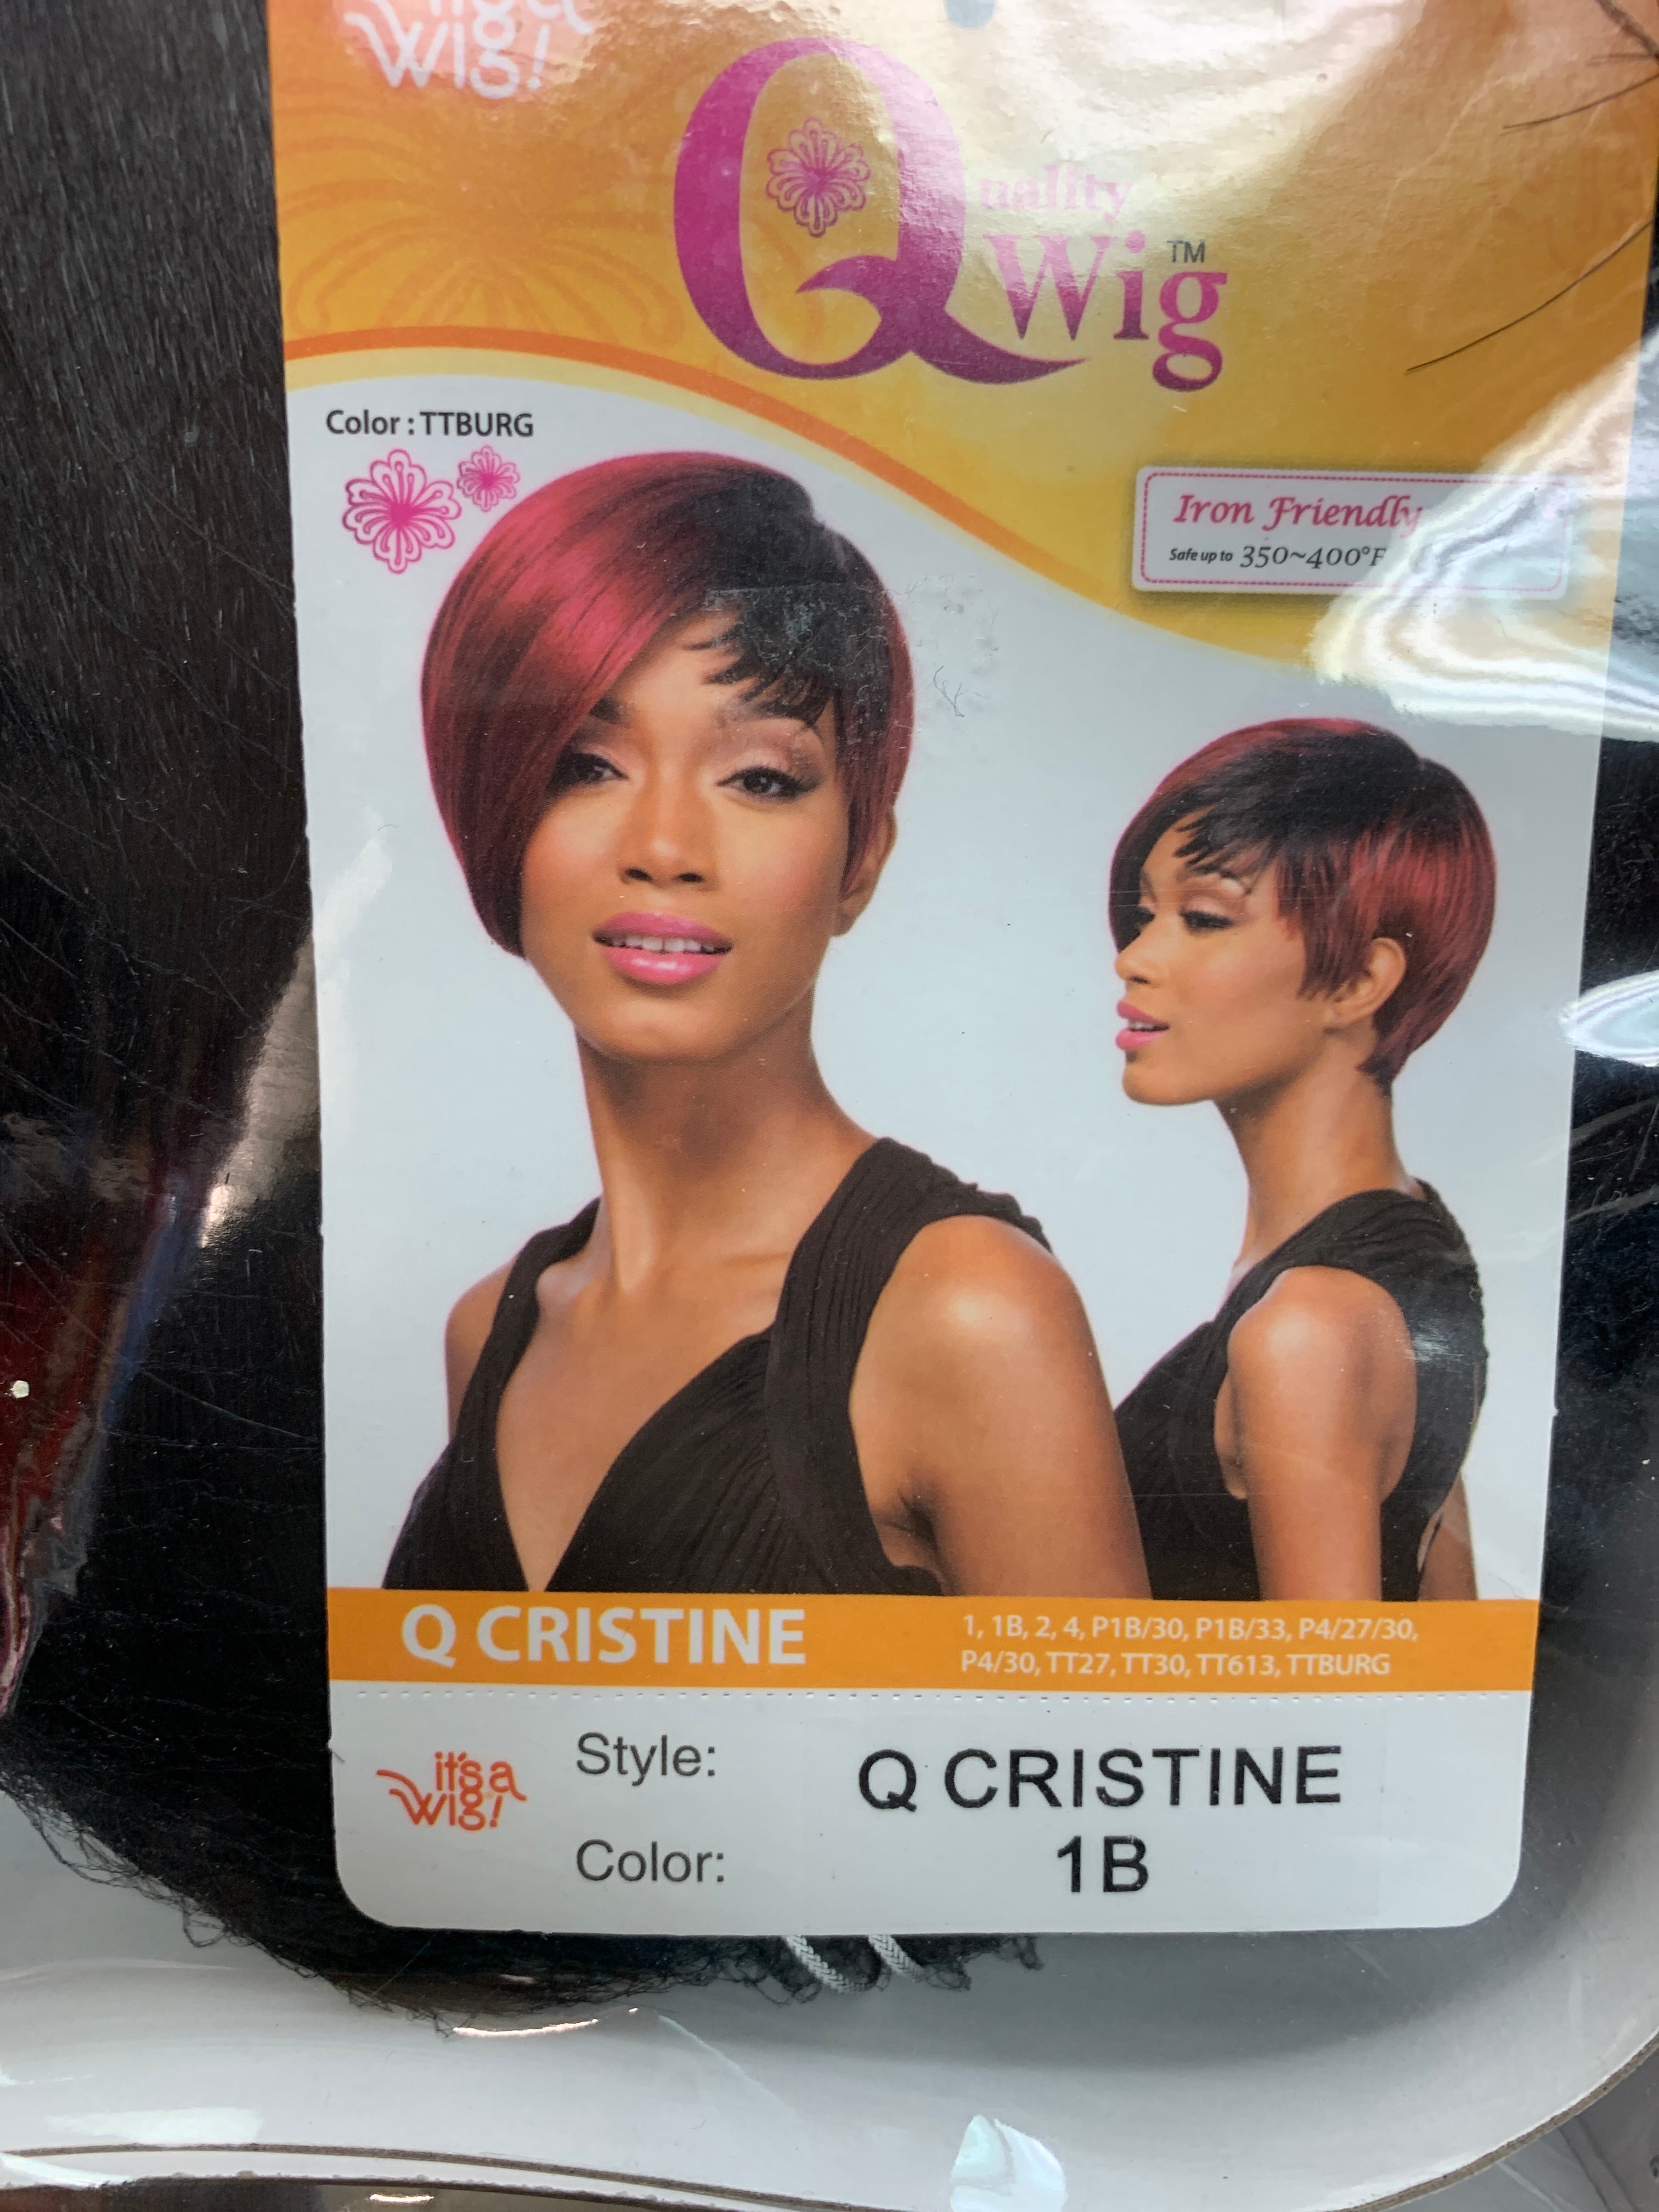 It’s a wig Q cristine